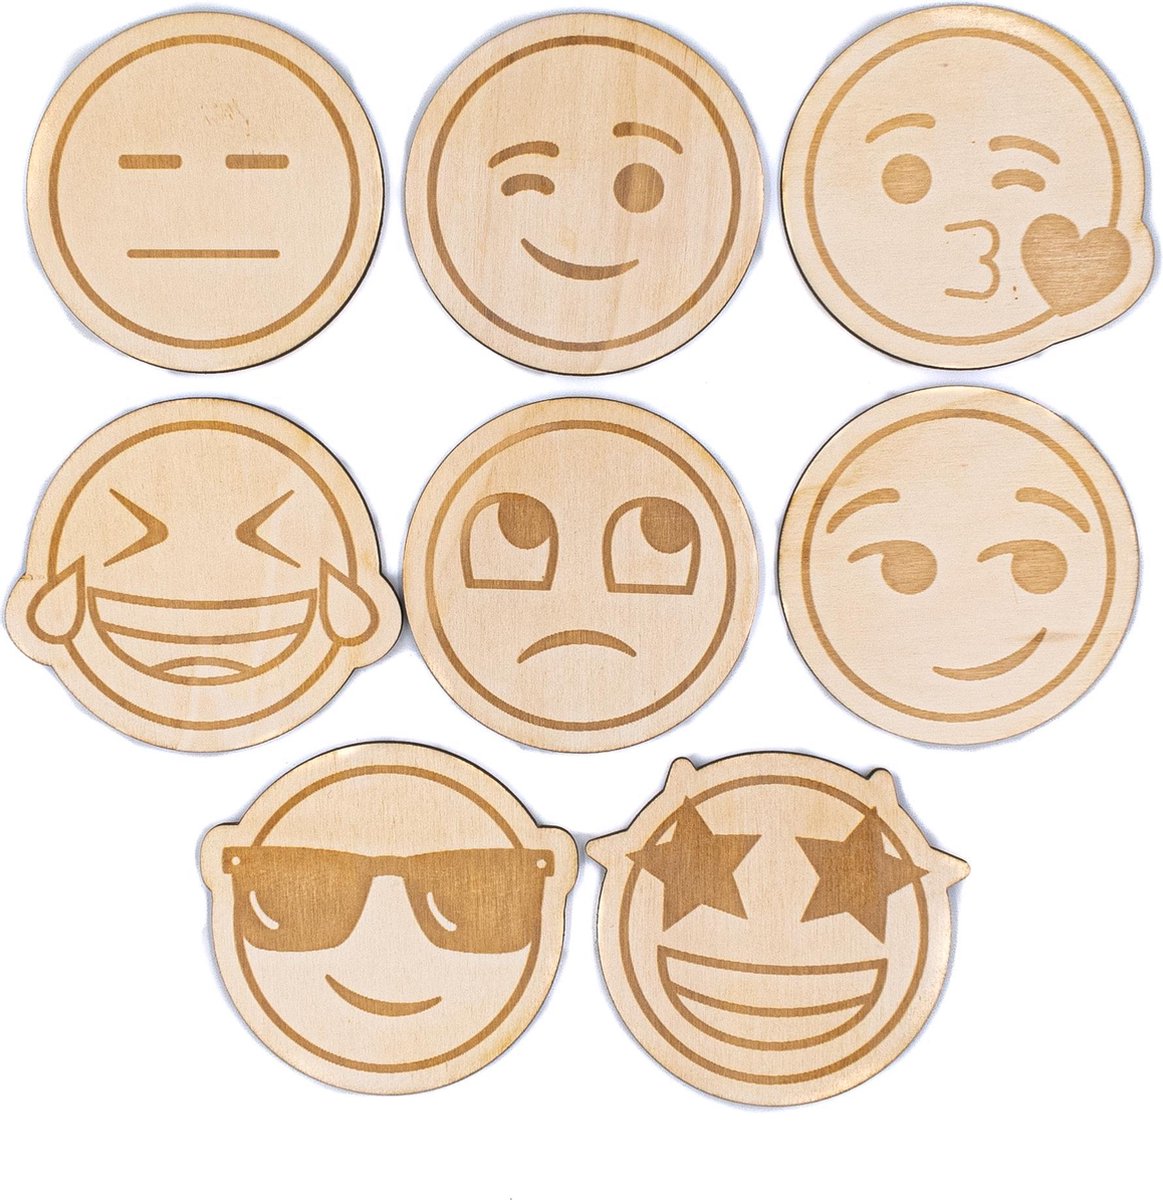 Deze emoji betekent wat Deze emoji’s